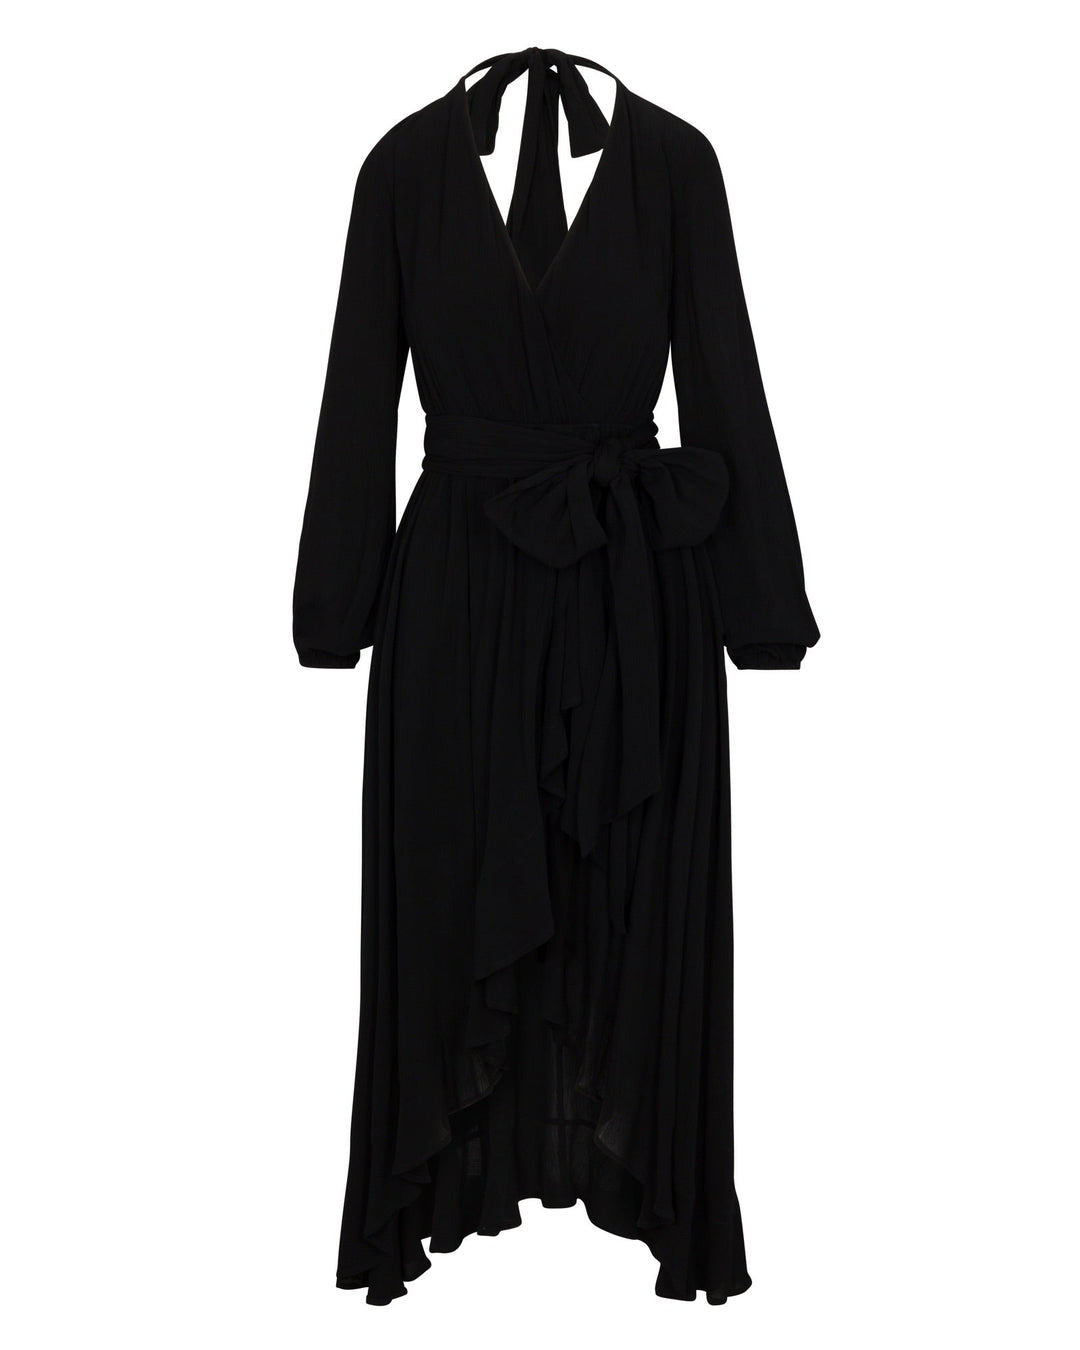 Meadow Maxi Dress - Black by Meghan Fabulous